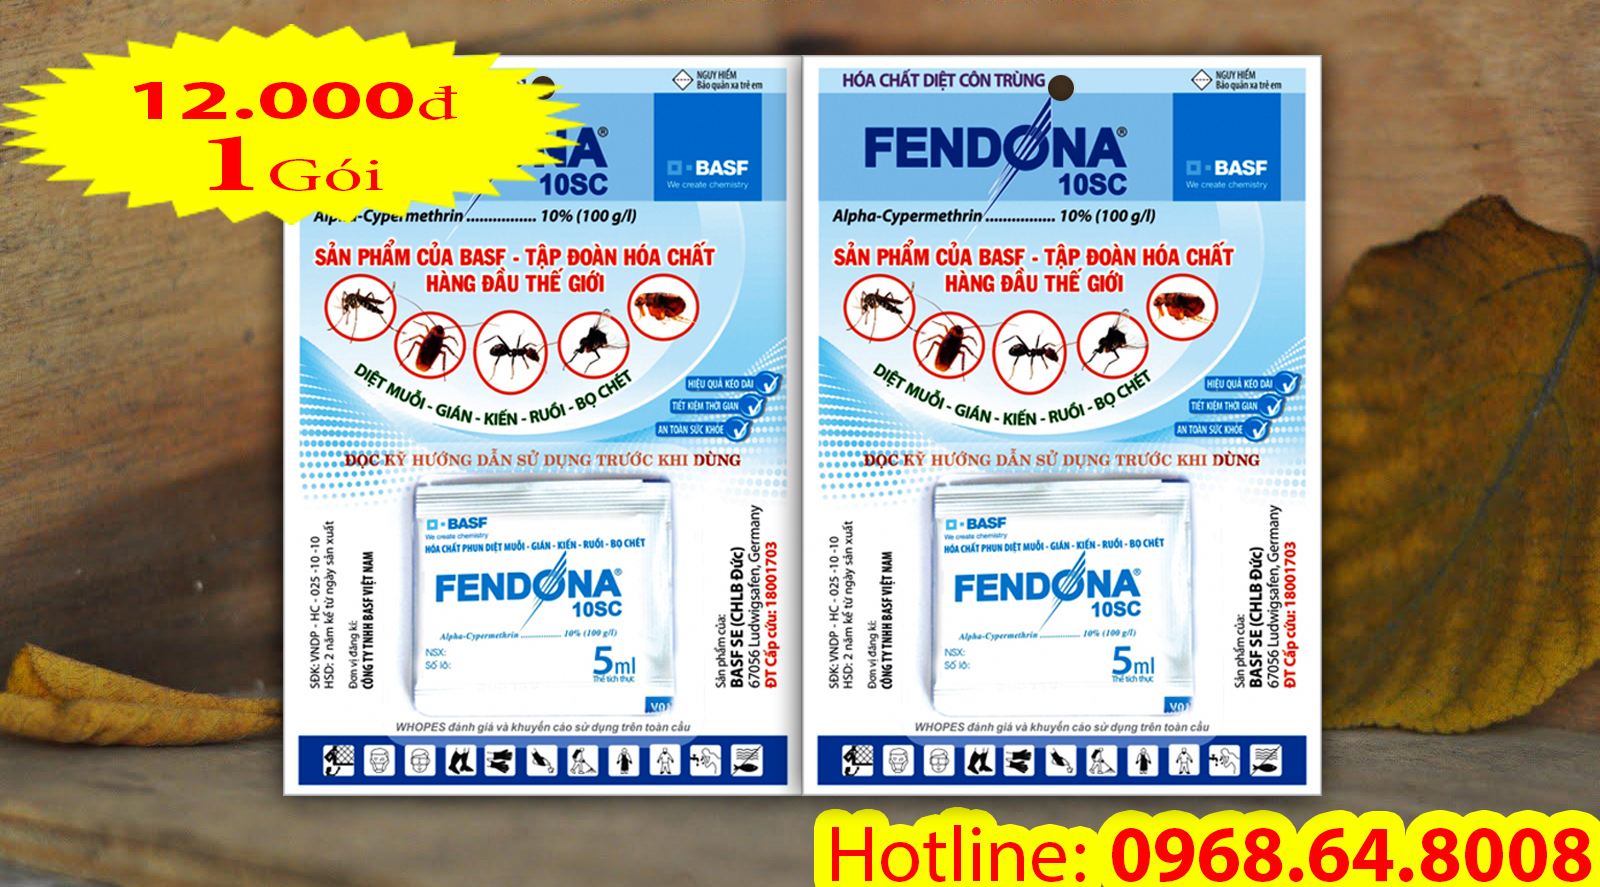 Fendona 10SC (5ml) - (BASF - CHLB ĐỨC) - Thuốc diệt côn trùng, muỗi, gián, ruồi, kiến, bọ chét...